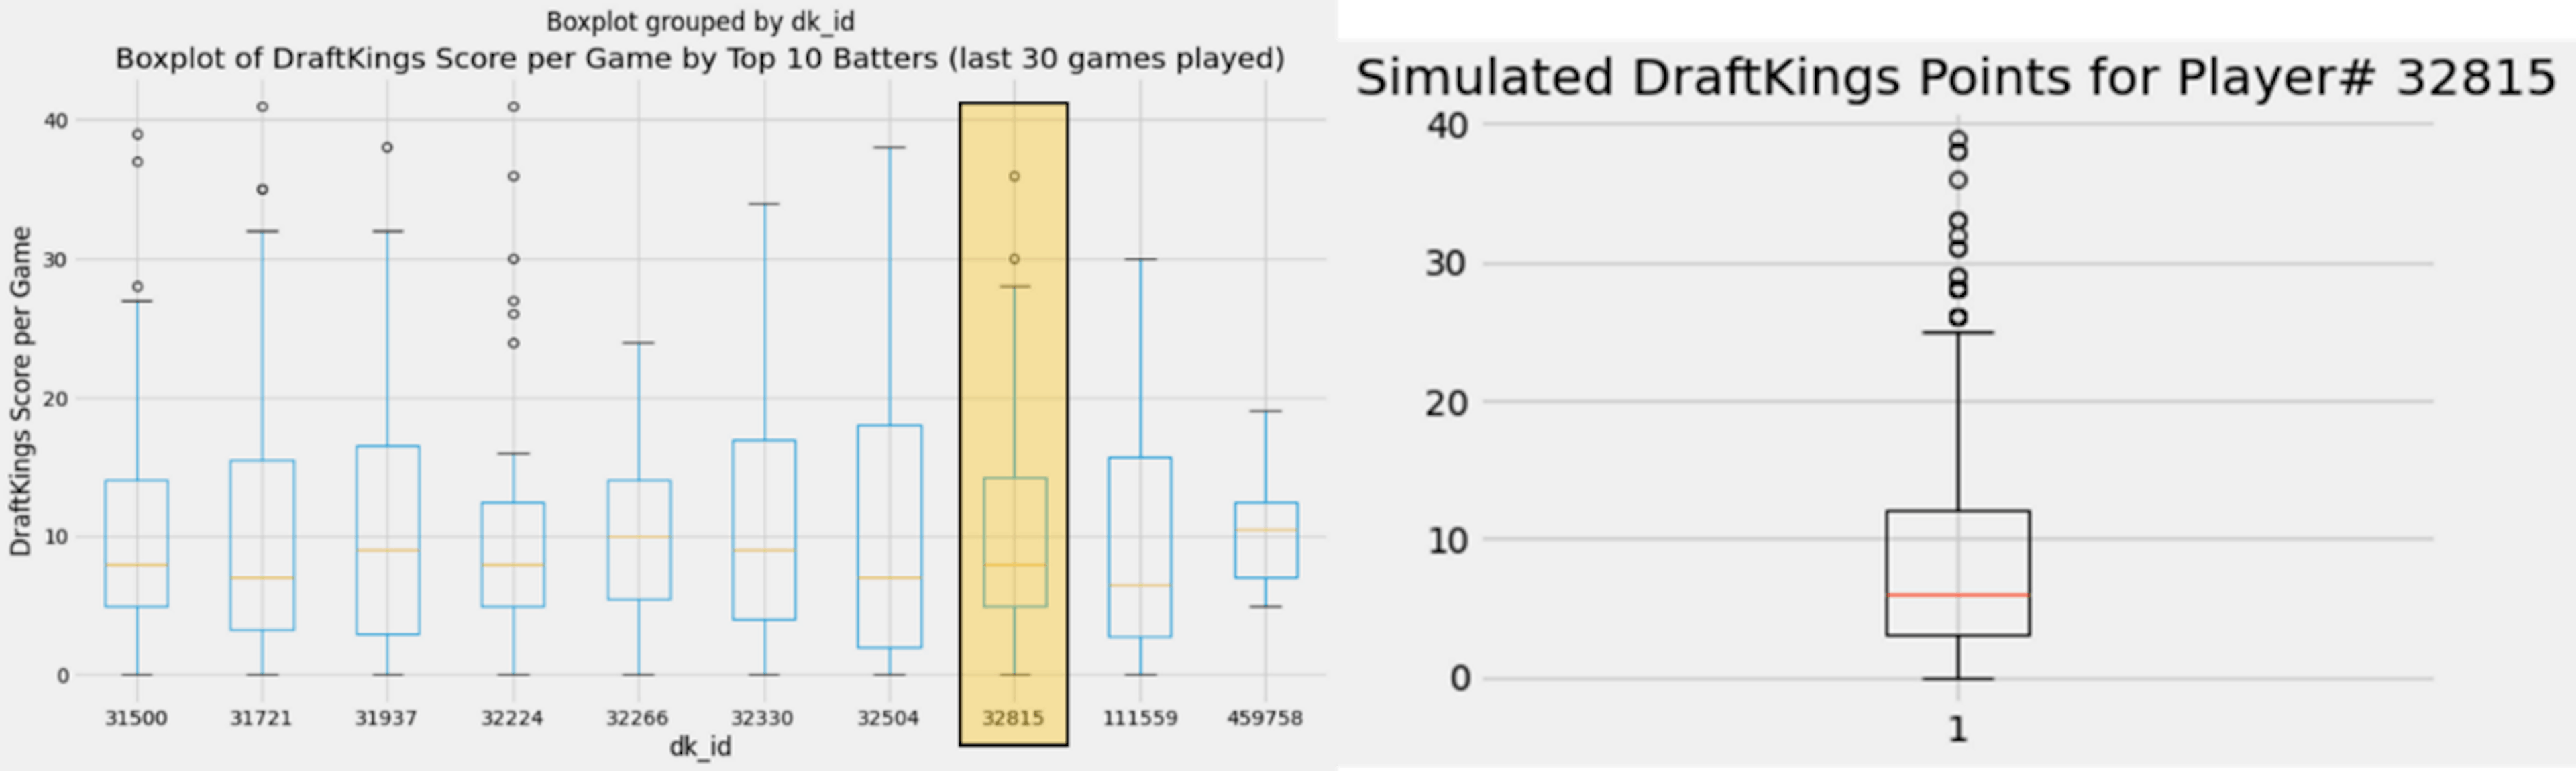 Imagen del autor: Diagrama de caja de Trea Turner Puntos de fantasía (simulados) vs. su desempeño real (50 juegos)